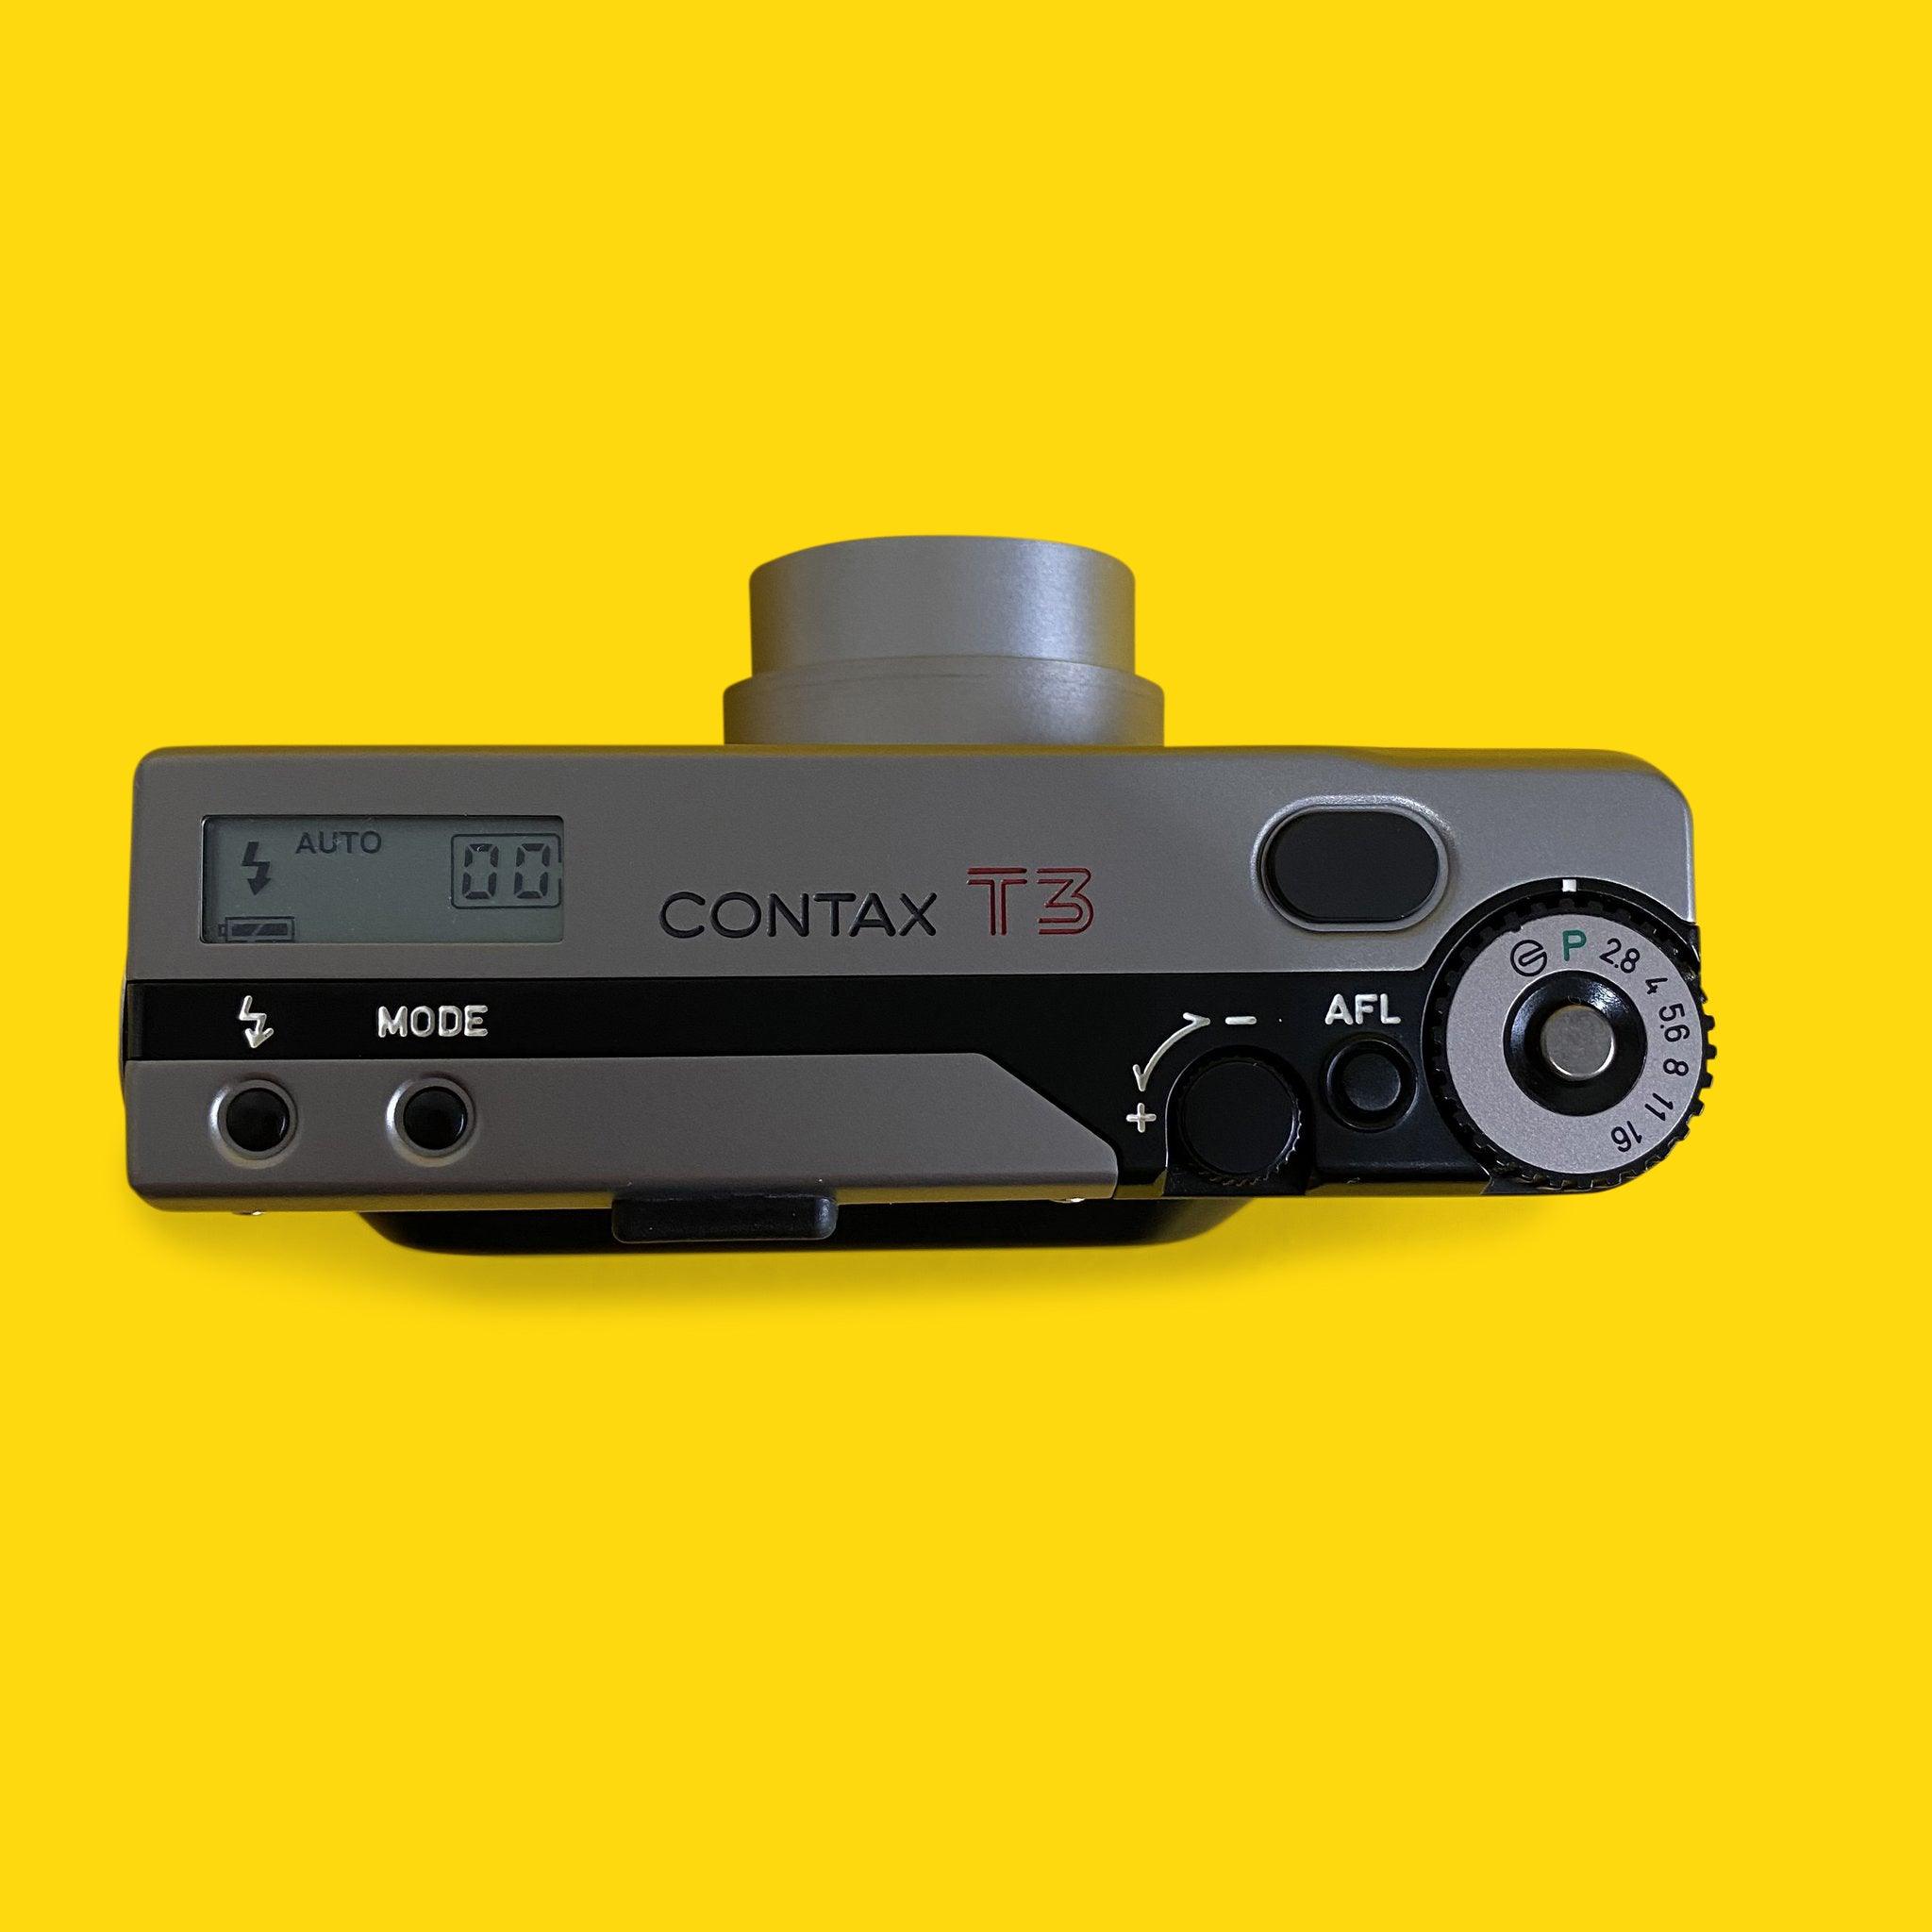 コンタックス T3 タイタン シルバー 35mm フィルム カメラ ポイント & シュート 35mm f/2.8 レンズ付き